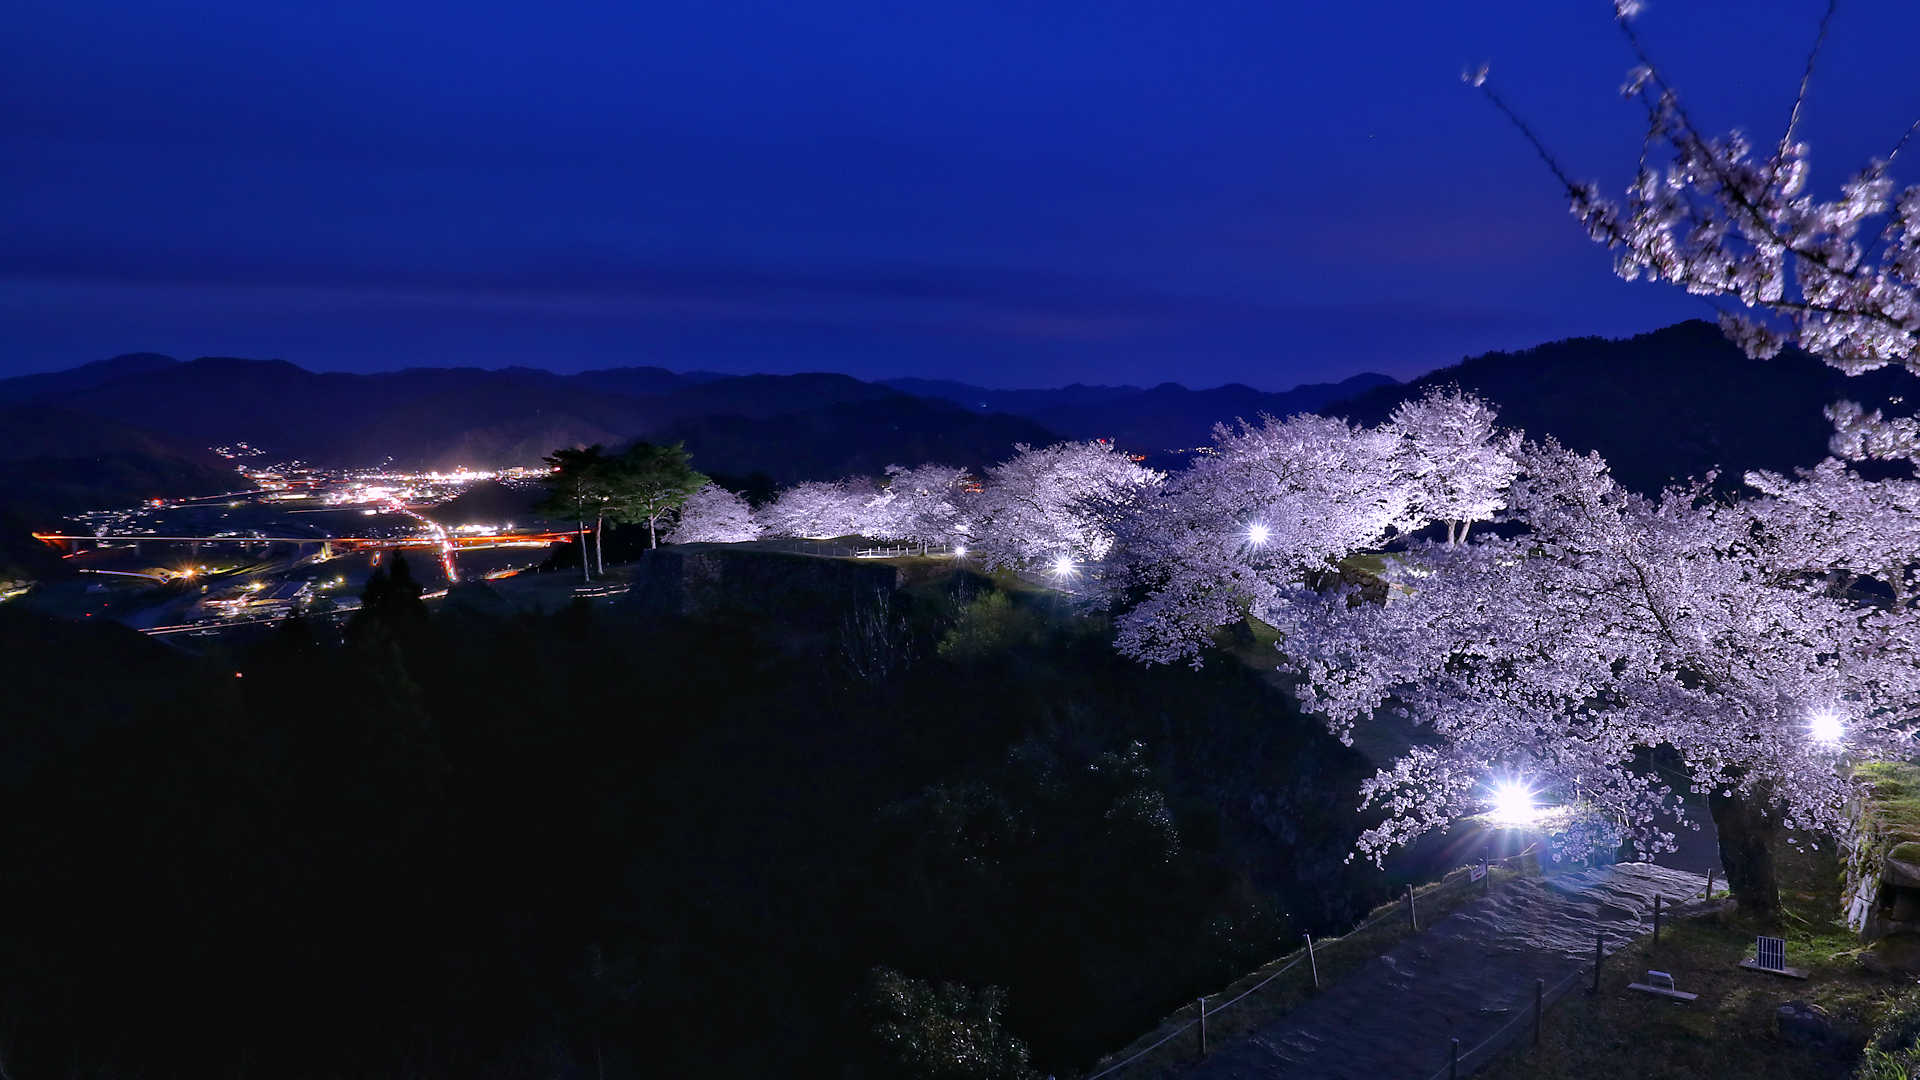 竹田城跡 夜桜ライトアップ 桜の見頃にあわせて観覧時間を夜間まで延長